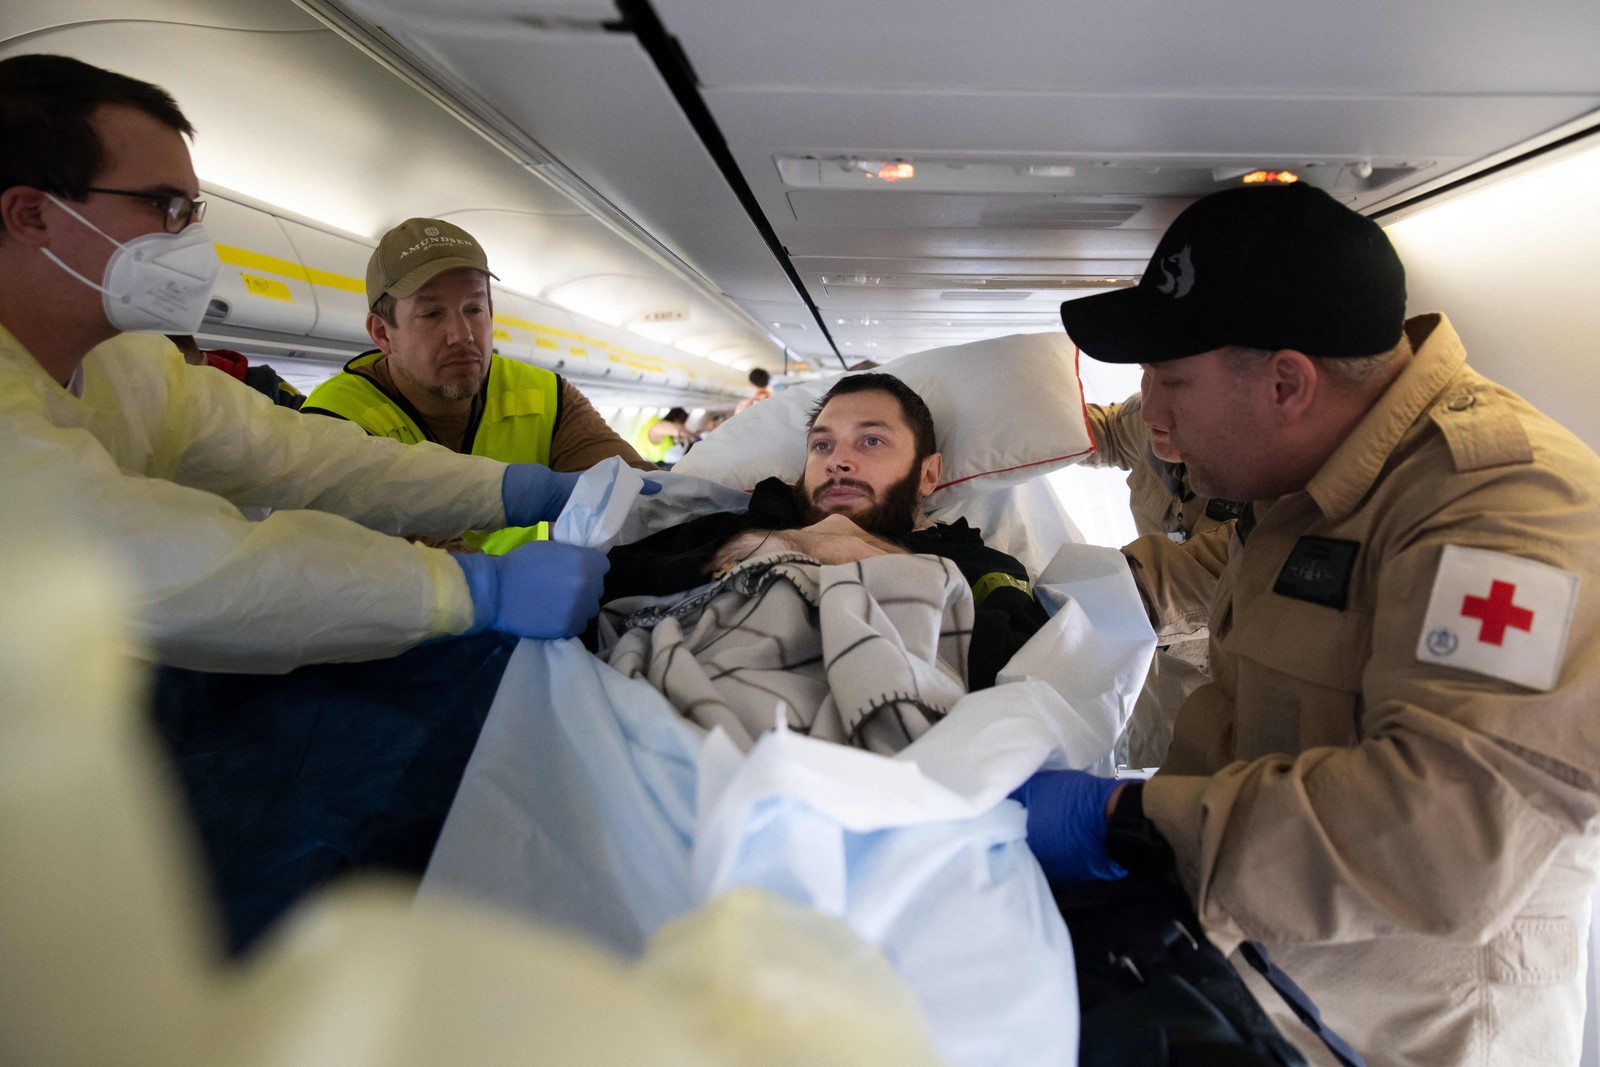 Soldado ucraniano ferido. Vladyslav Shakhov, sendo preparado para ser transferido a um hospital em Berlim, na Alemanha — Foto: Petter Berntsen/AFP